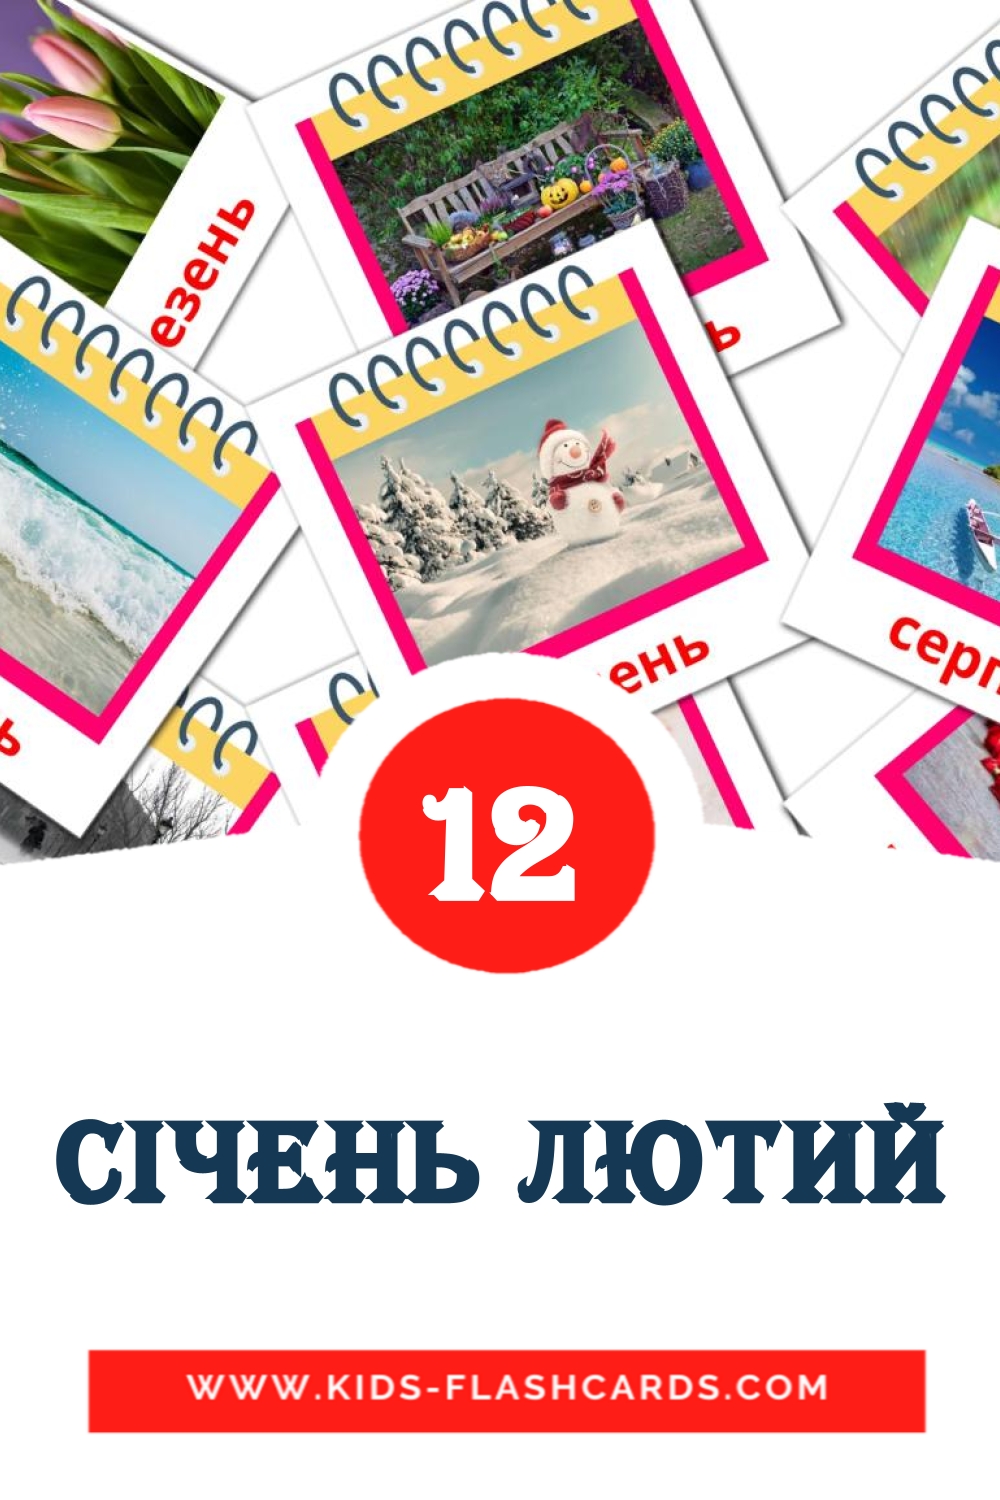 12 carte illustrate di Січень лютий per la scuola materna in ucraino